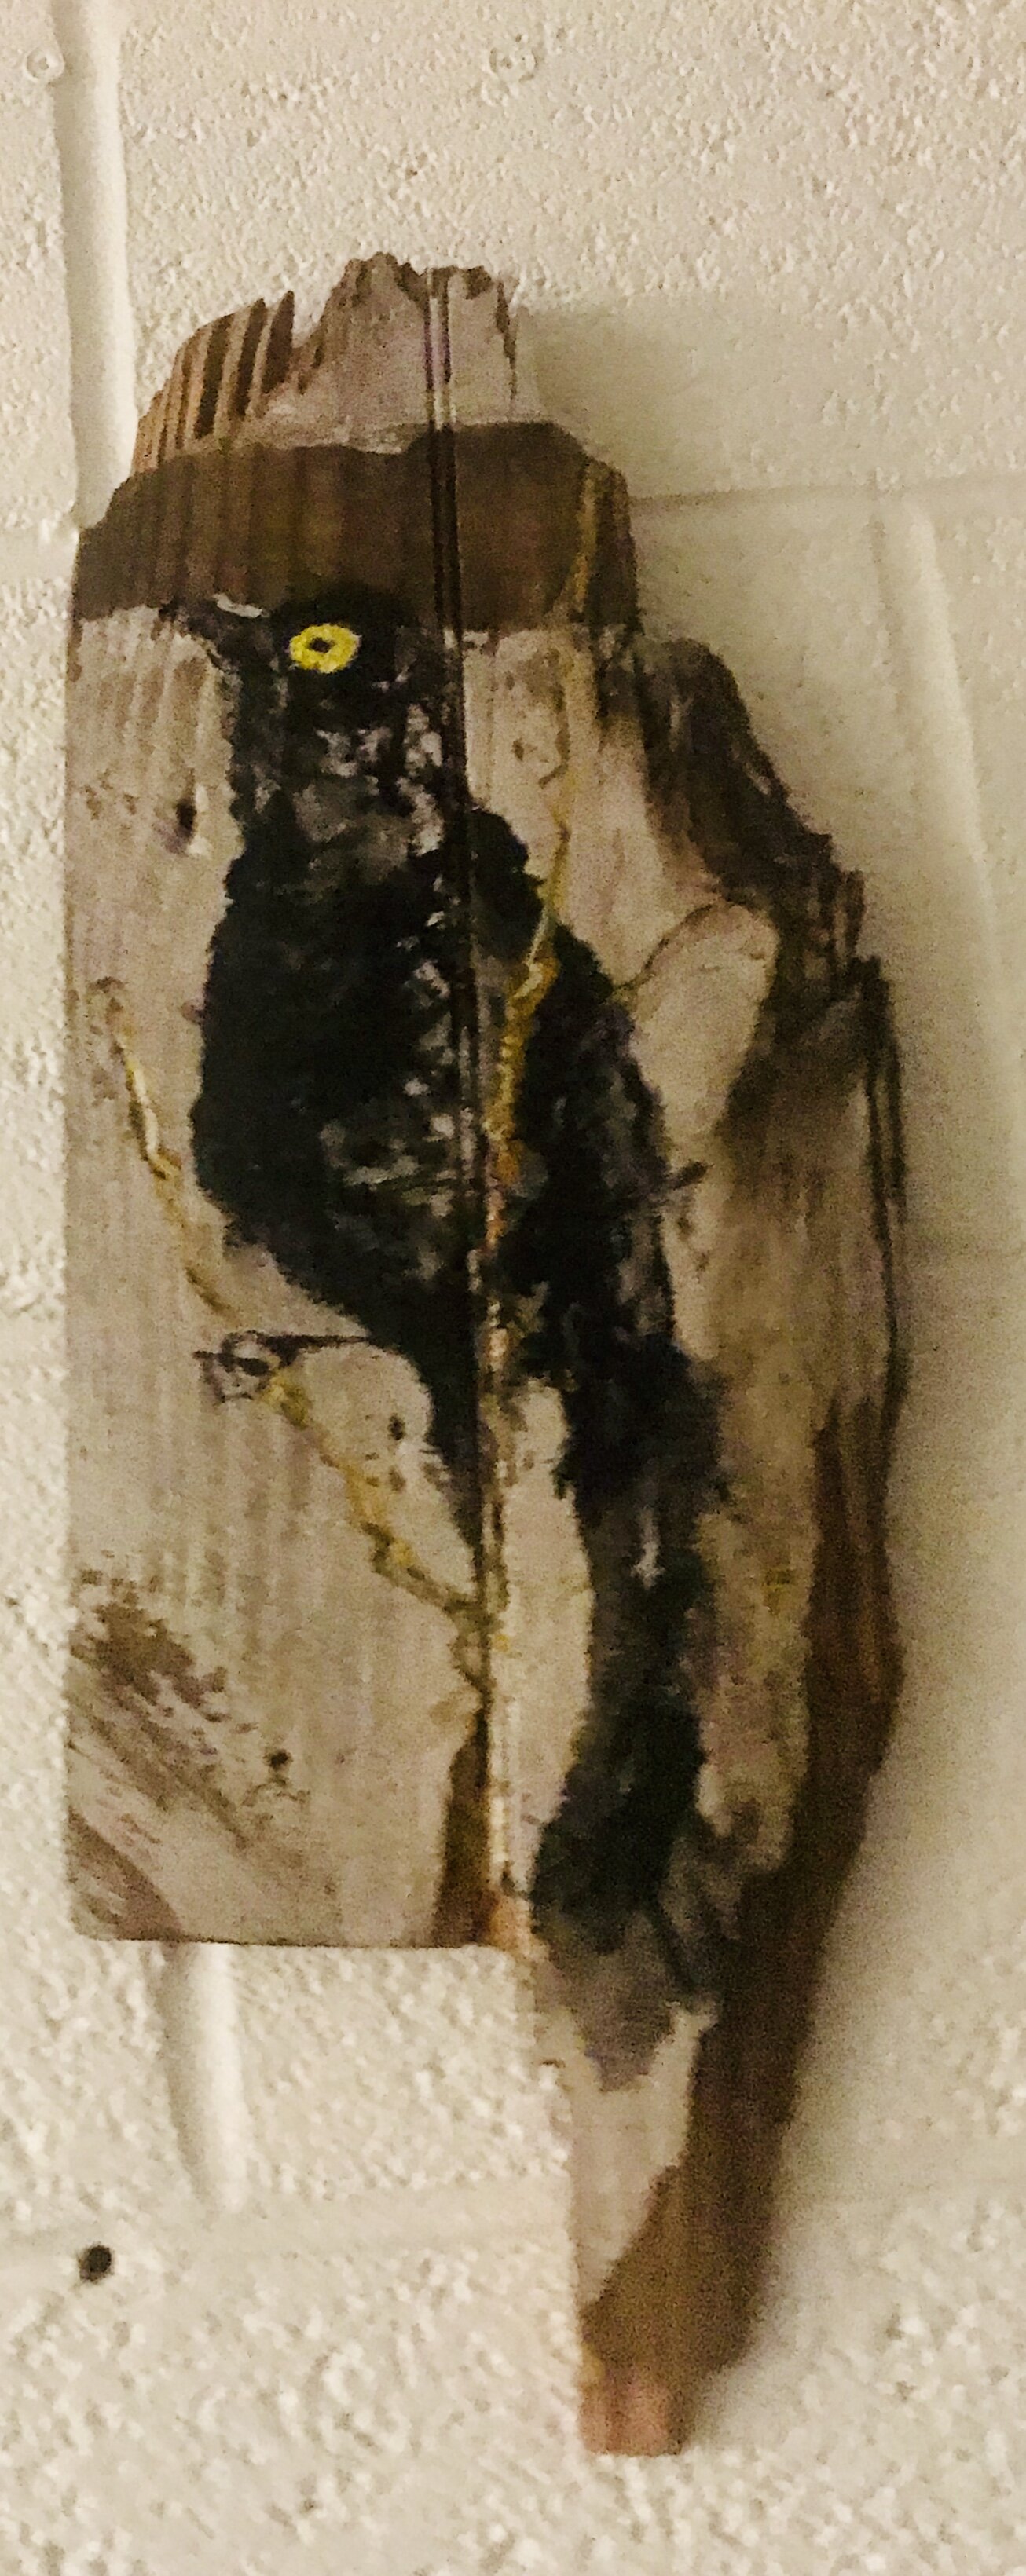   BLACKBIRD ON WOOD 